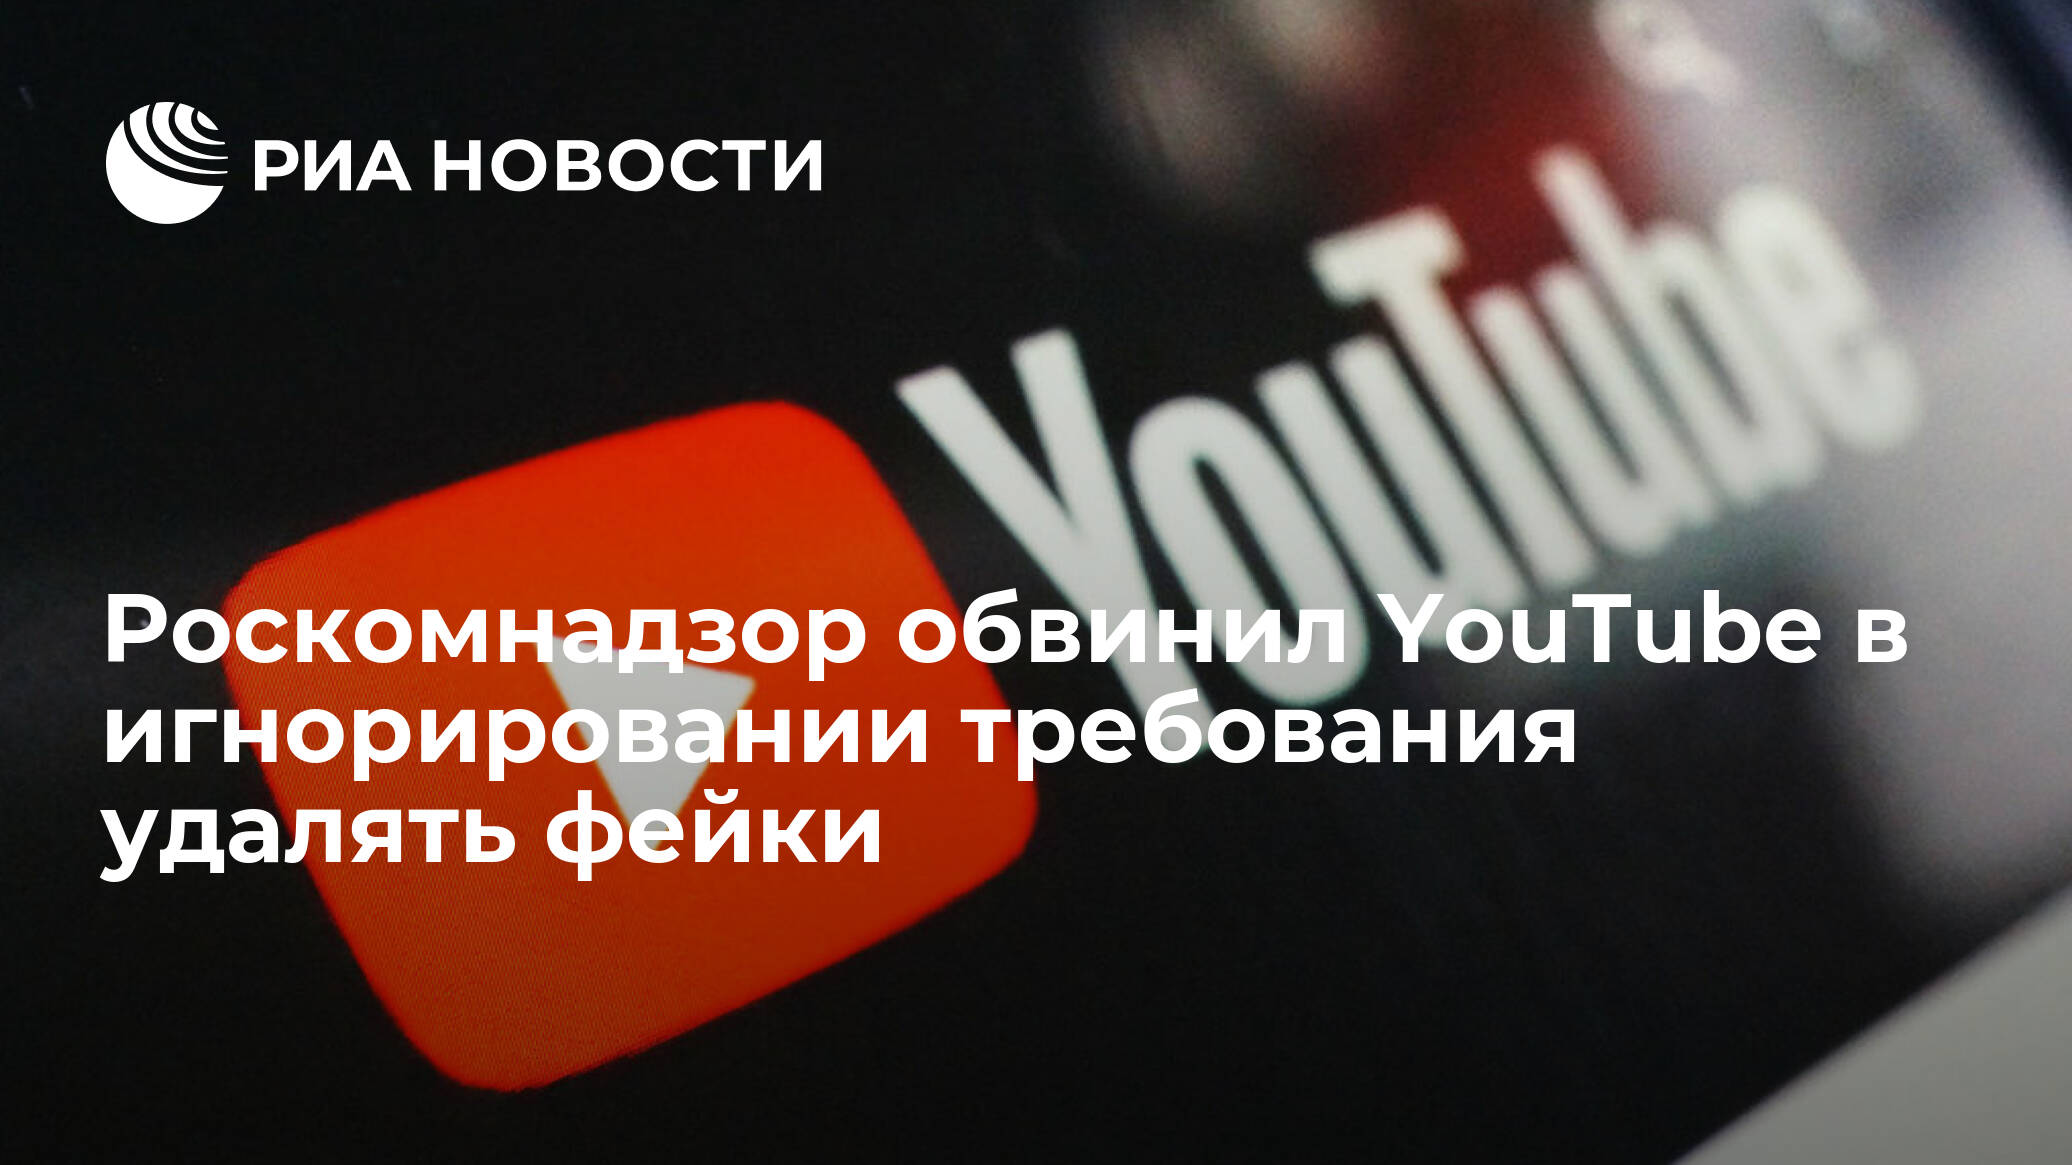 YouTube игнорирует требования РКН по удалению материалов экстремистского характера: мнение ярославцев